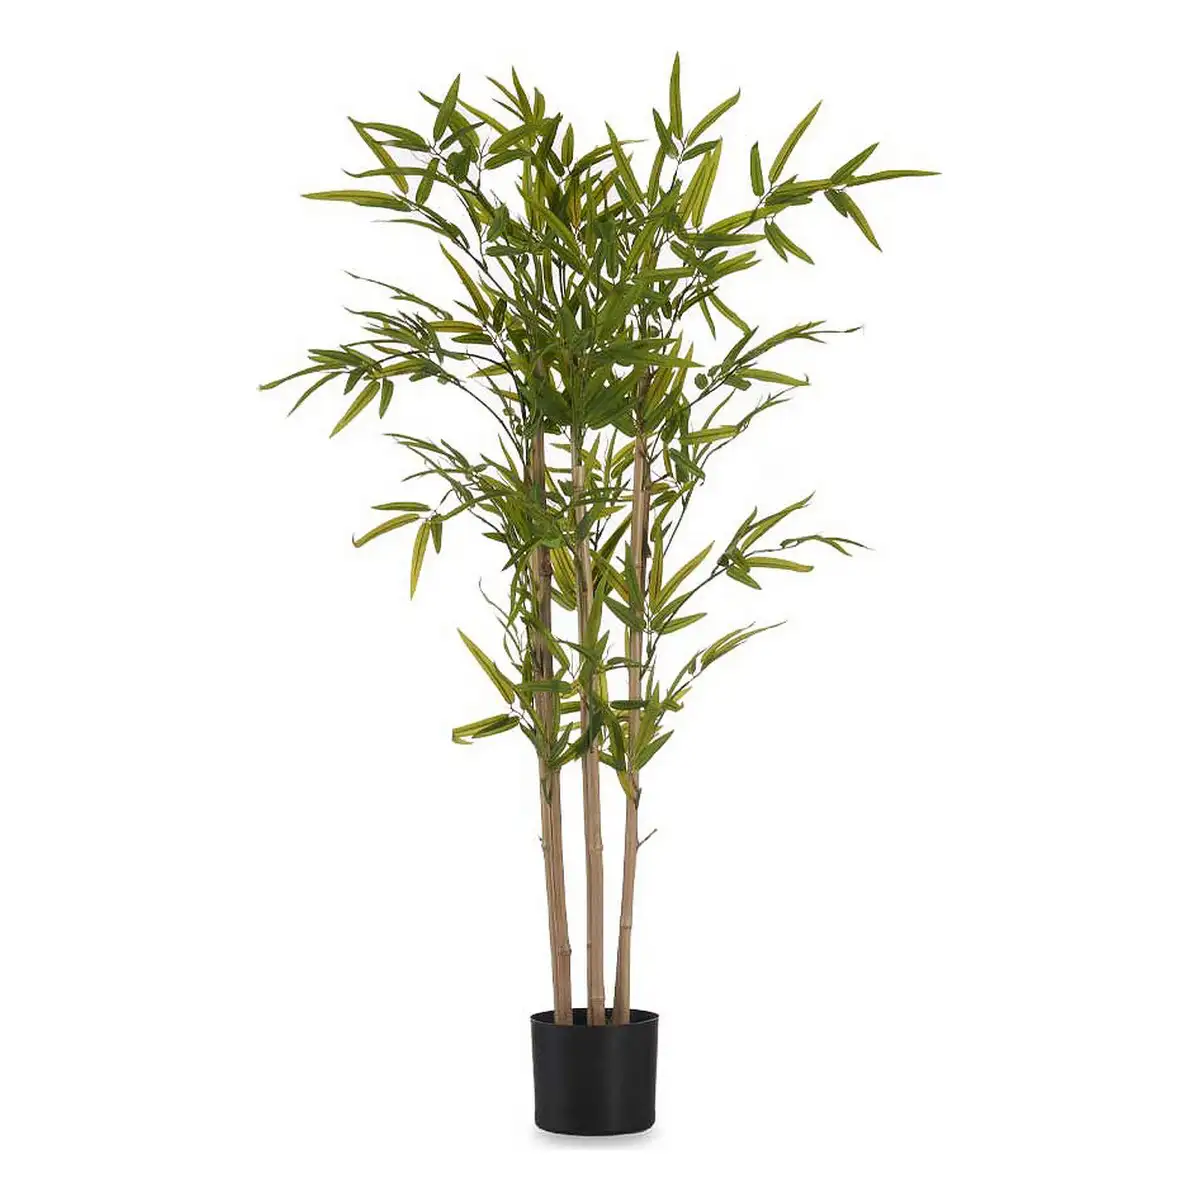 Plante decorative bambou vert plastique 70 x 120 x 70 cm _5450. Découvrez DIAYTAR SENEGAL - Là où Votre Shopping Prend Vie. Plongez dans notre vaste sélection et trouvez des produits qui ajoutent une touche spéciale à votre quotidien.